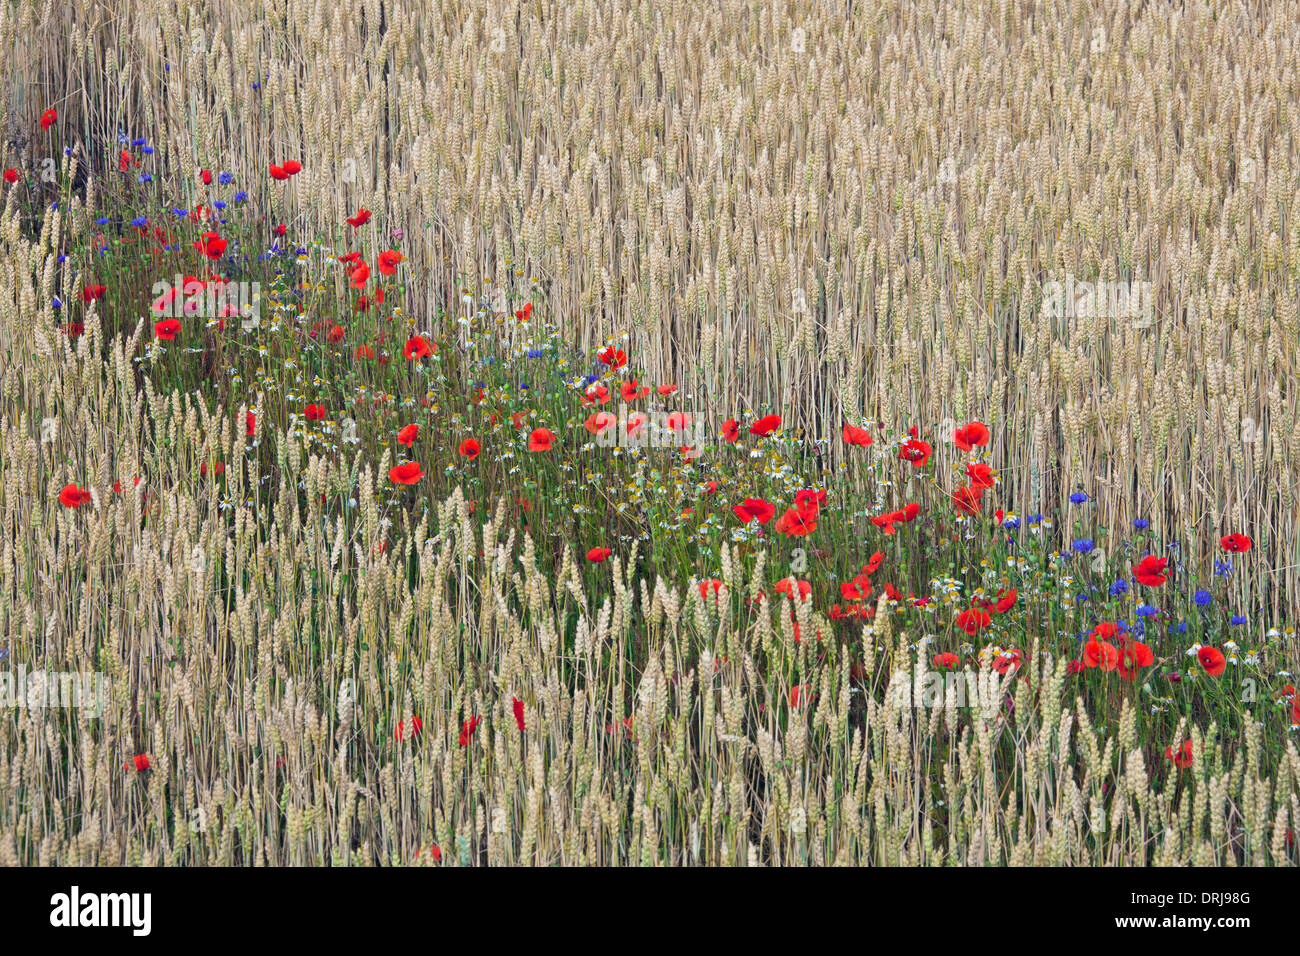 Les Coquelicots (Papaver rhoeas), bleuet (Centaurea cyanus) et d'autres fleurs sauvages la floraison dans champ de blé en été Banque D'Images